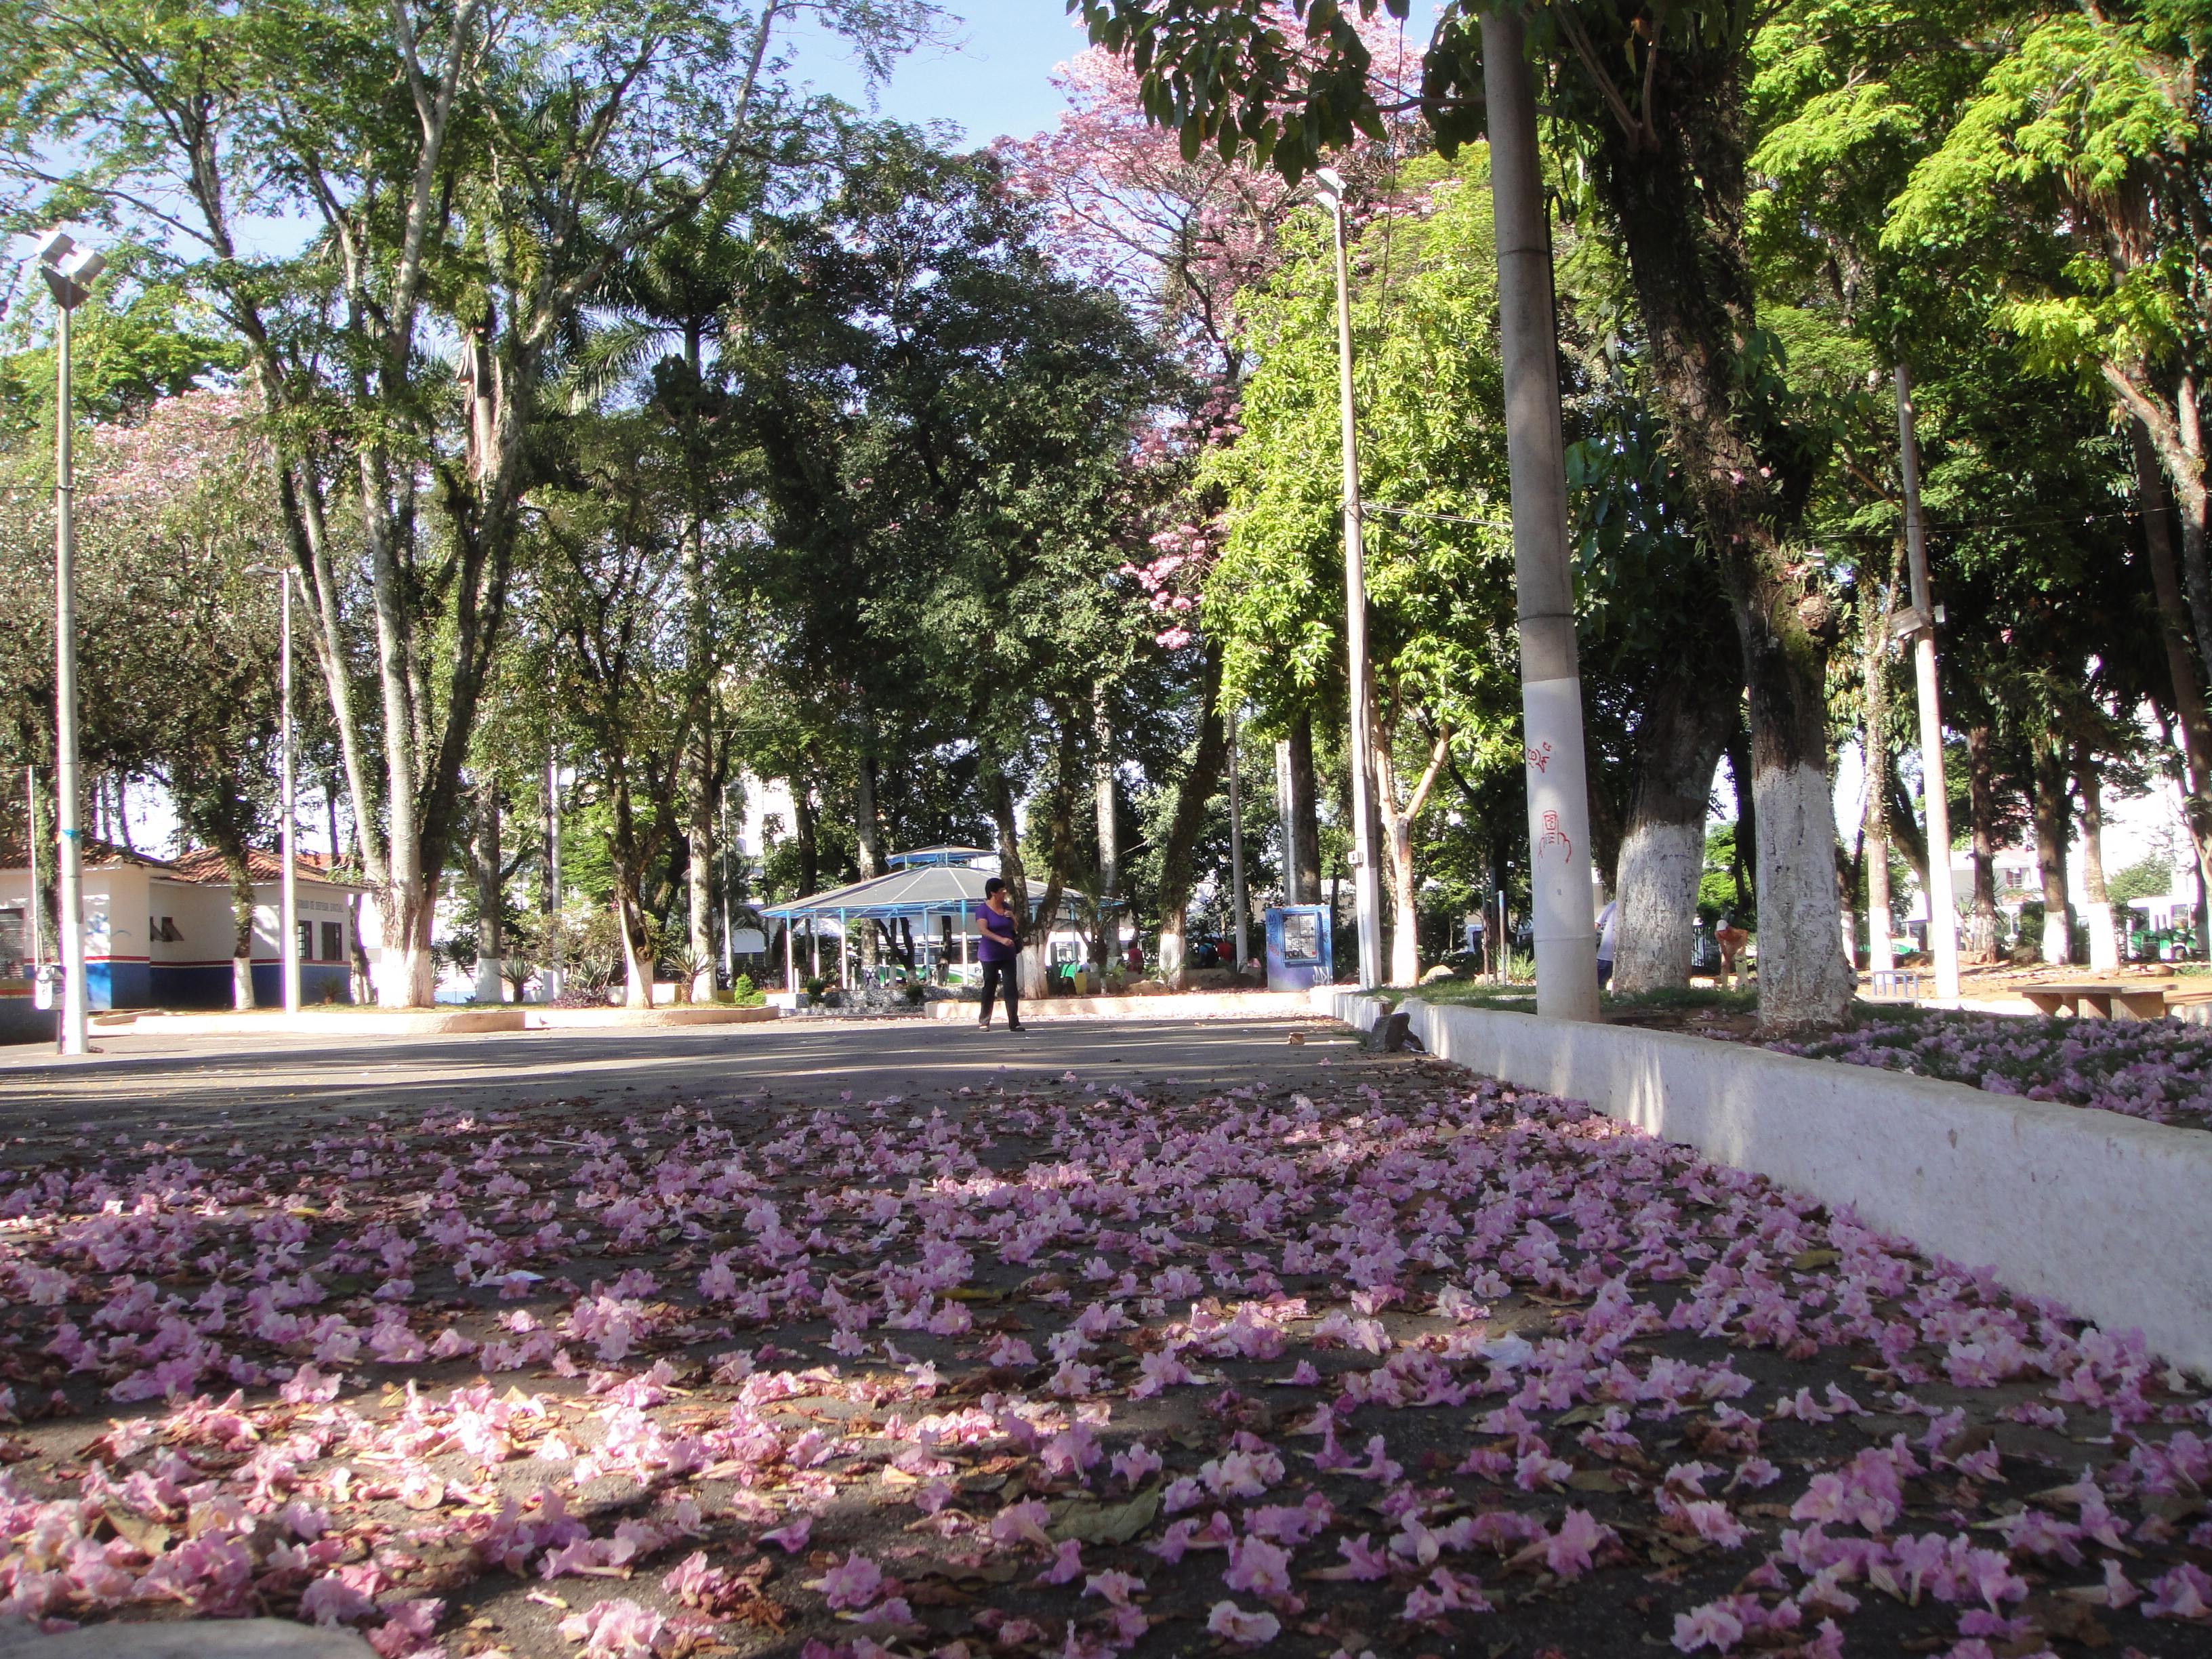 A velha praça João Pinheiro com seu tapete de flores de Ipê rosa... Foi aqui que 'seu' Joaquim viu a dupla Simplório & Finório pela ultima vez!